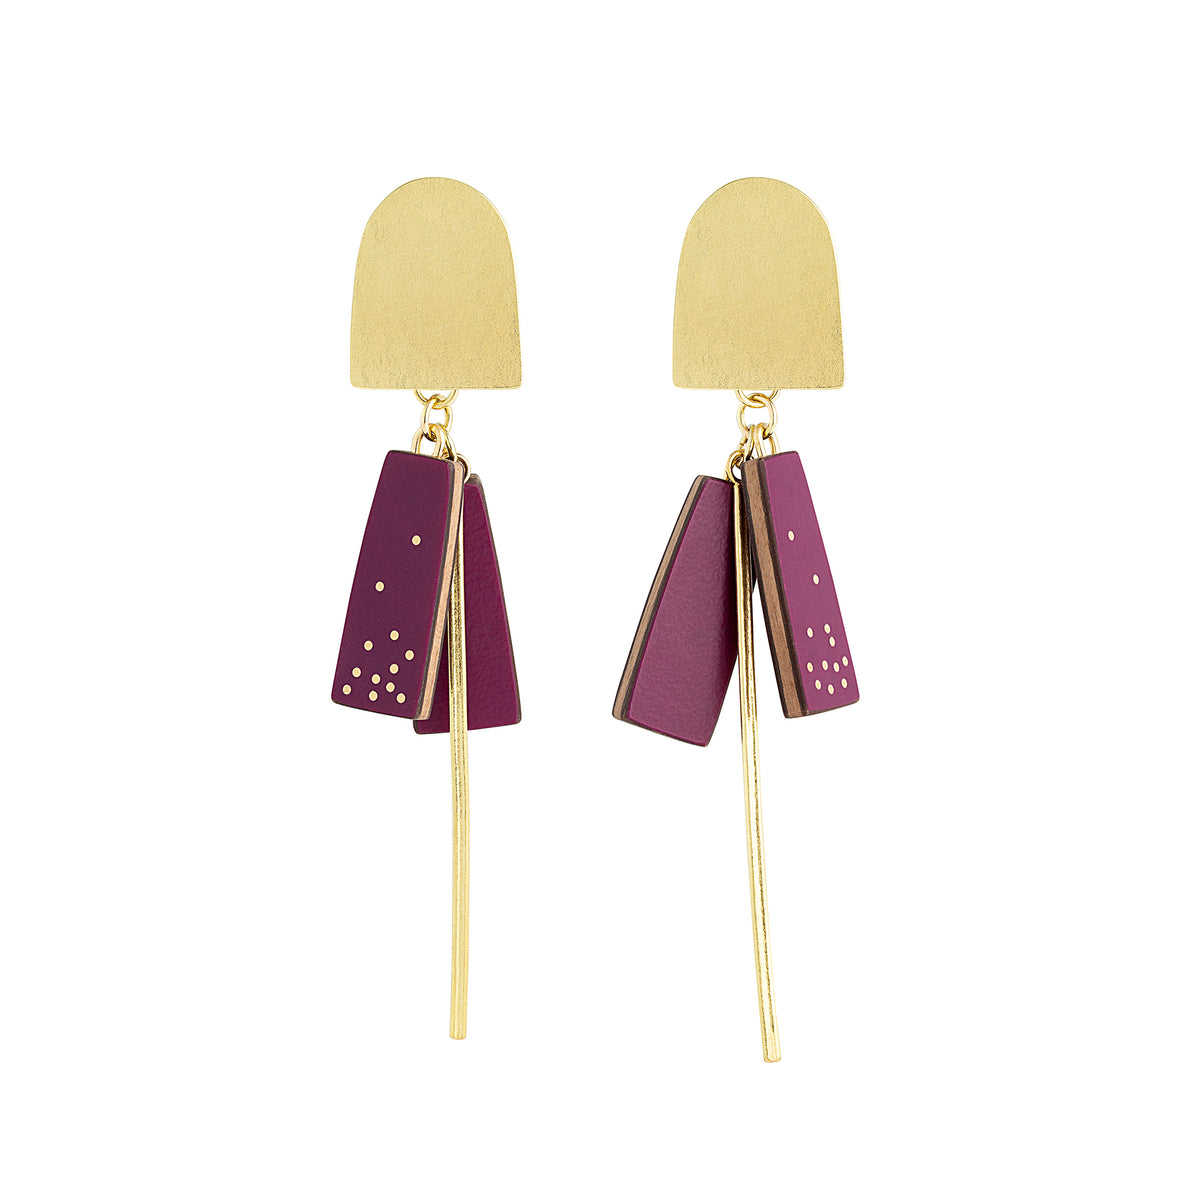 Gold arch earrings in plum